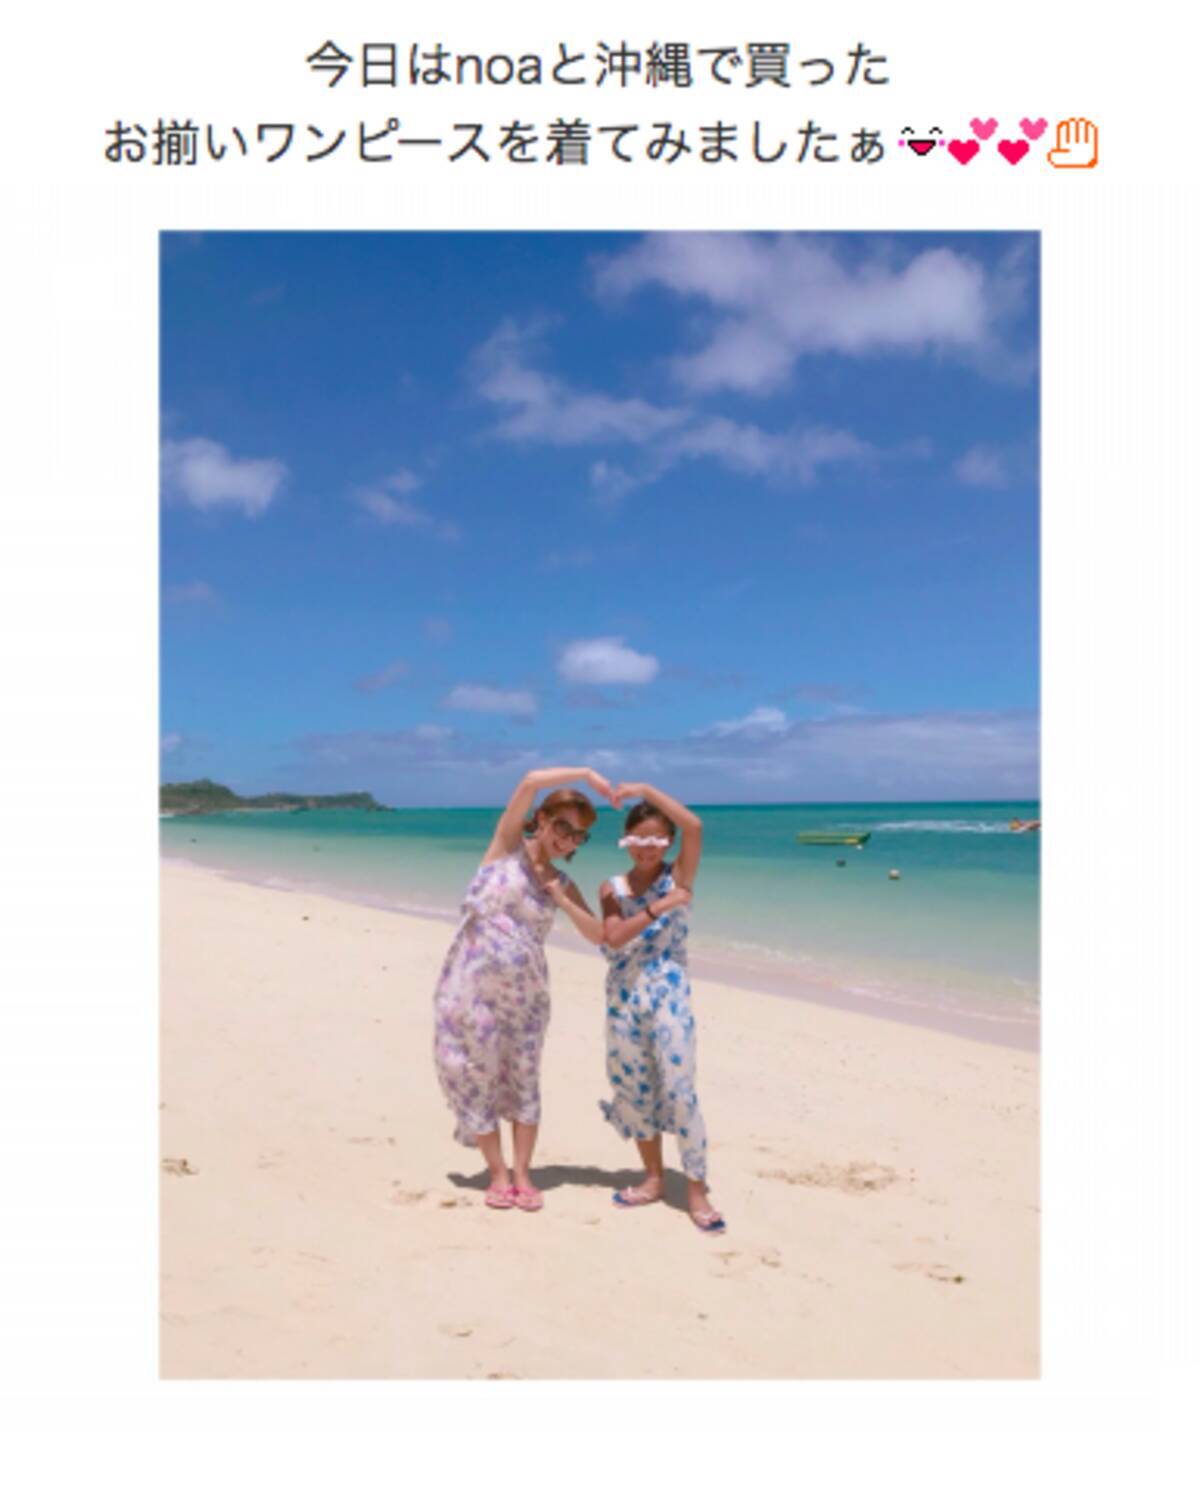 辻希美 長女と沖縄で 色違い双子コーデ 写真公開 お気に入り 18年8月14日 エキサイトニュース